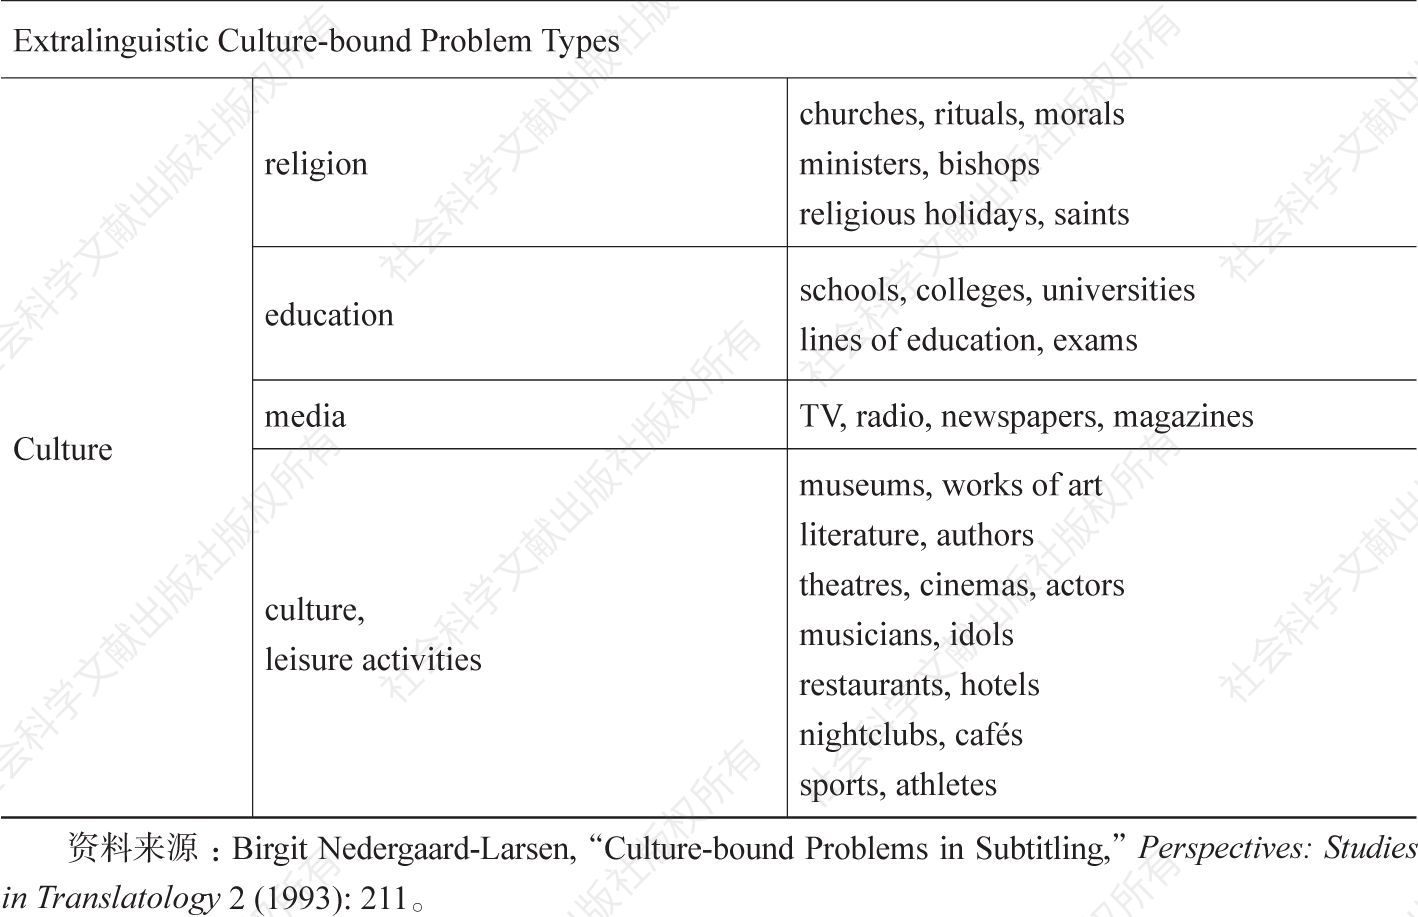 附录1 内德嘉德-拉尔森对文化专有项的分类-续表